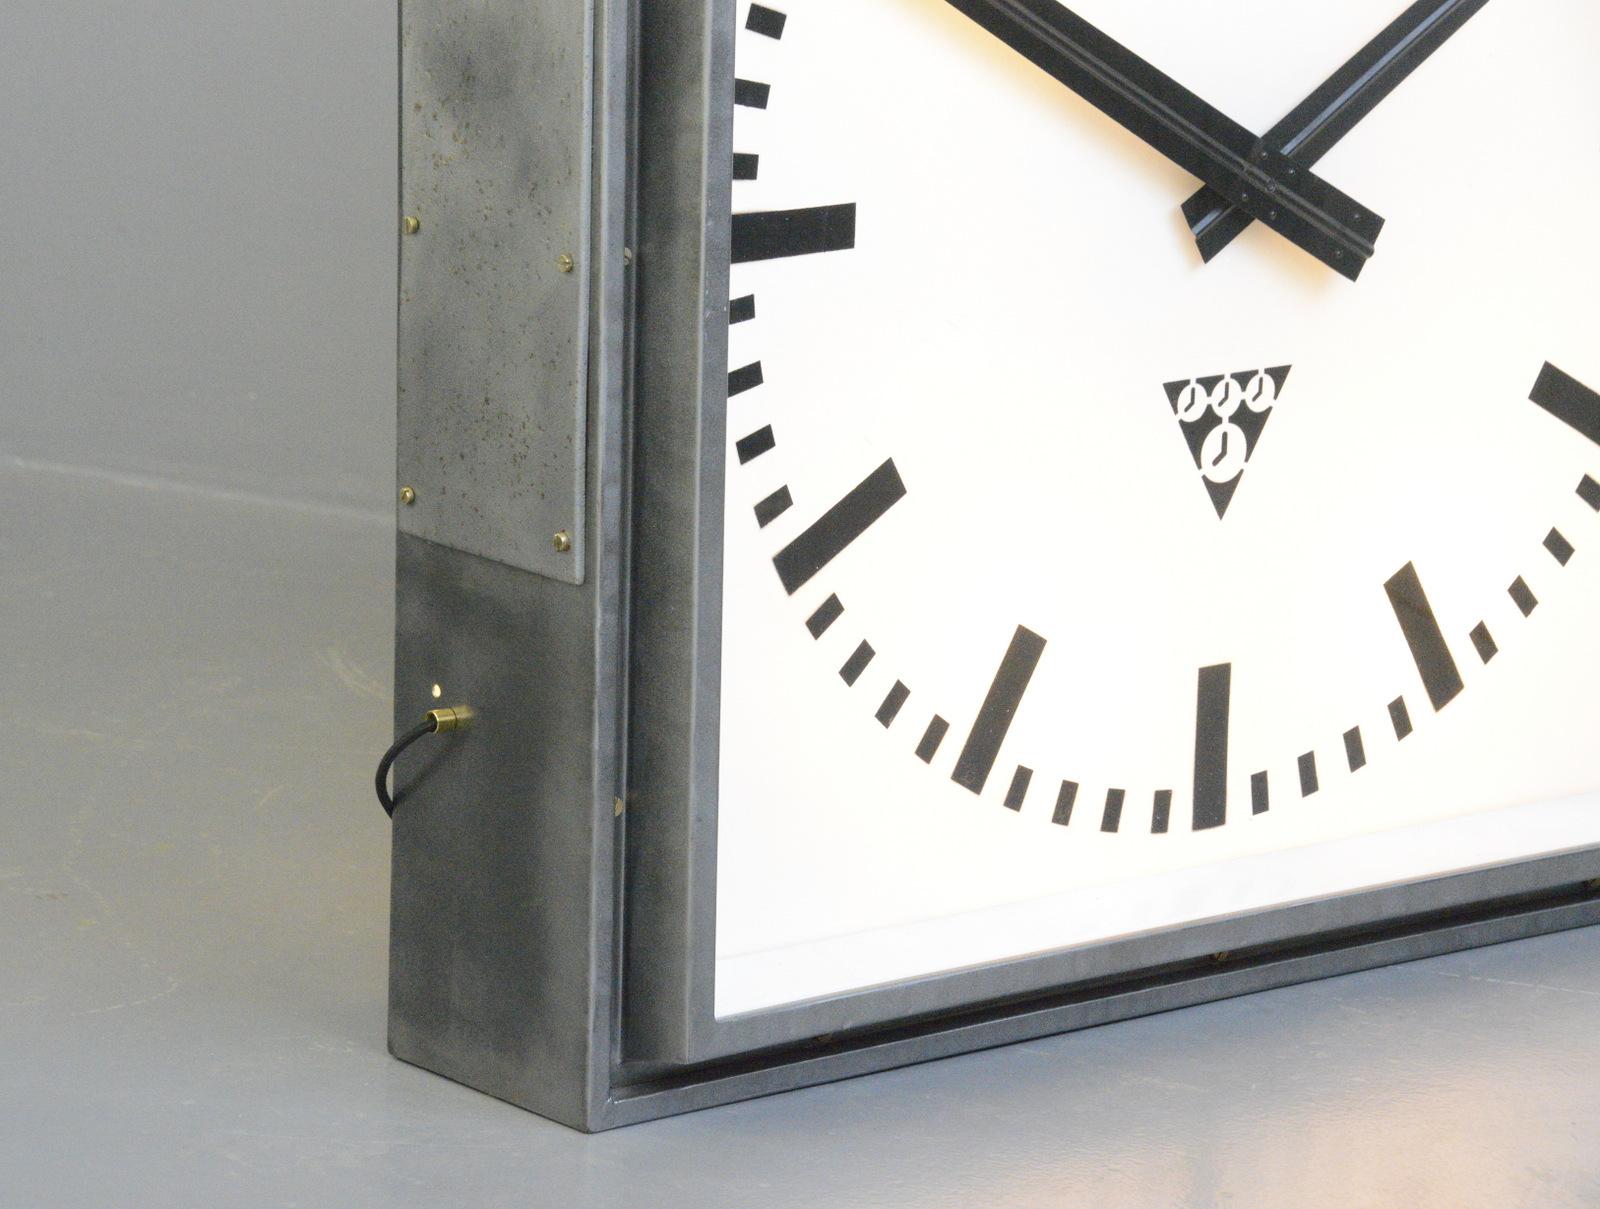 XL Light Up Station Clock von Pragotron, ca. 1950er Jahre (Stahl)